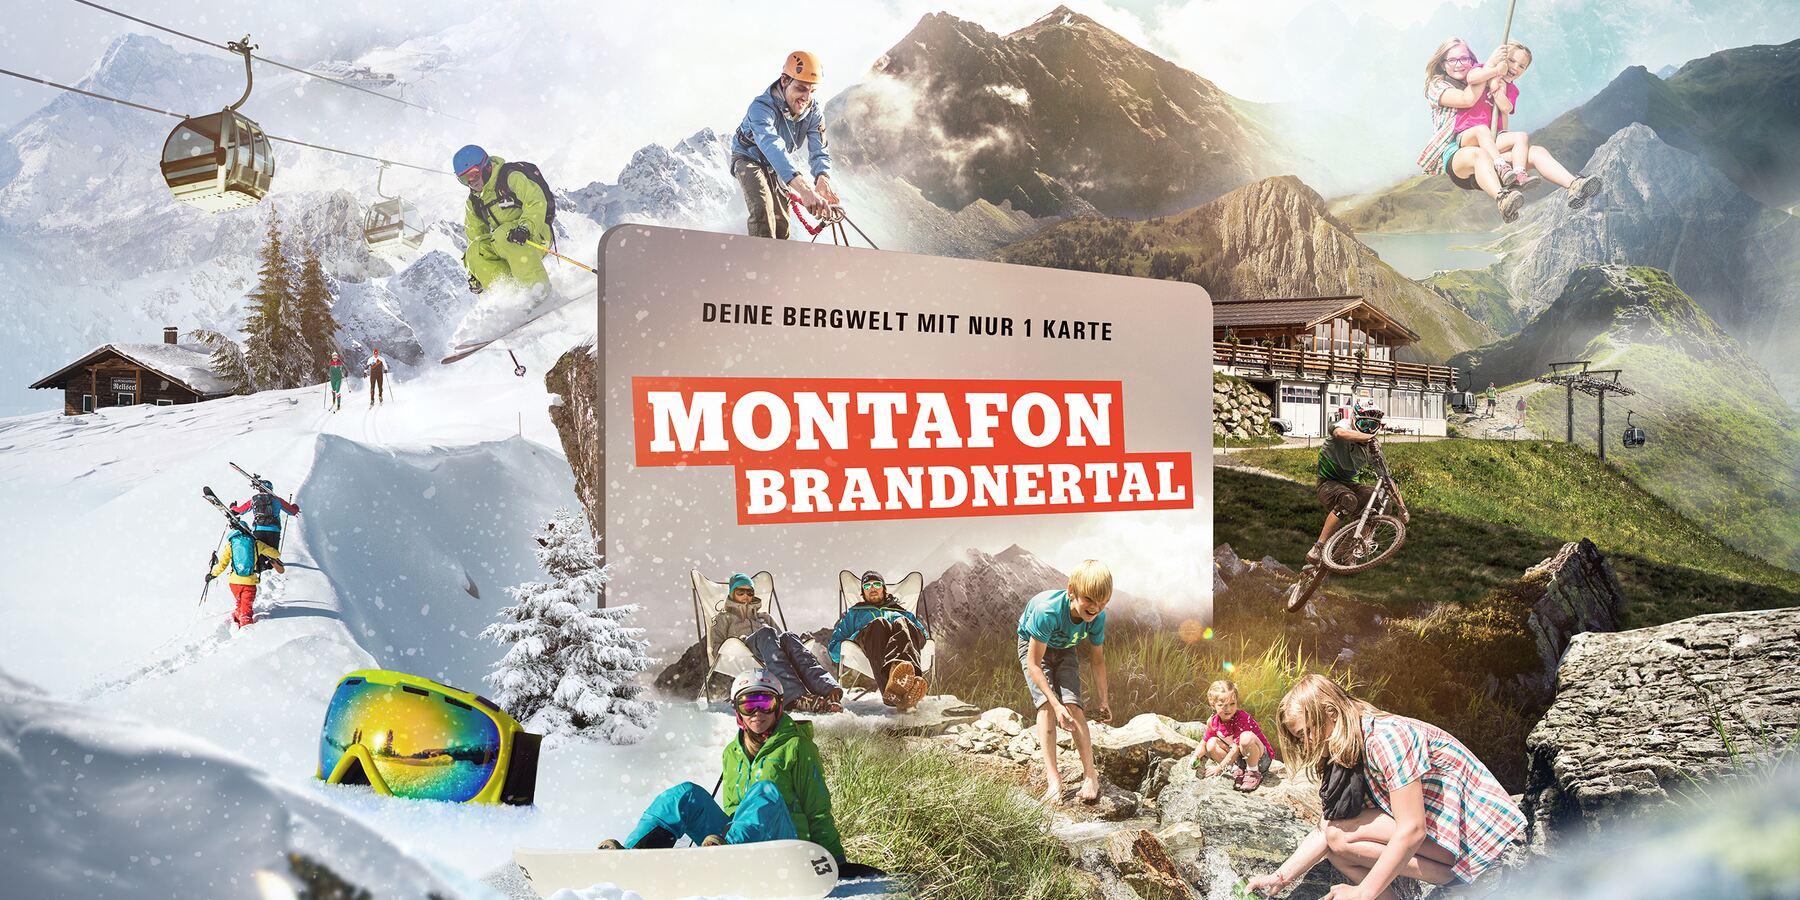 Montafon Brandnertal - Deine Bergwelt mit nur 1 Karte